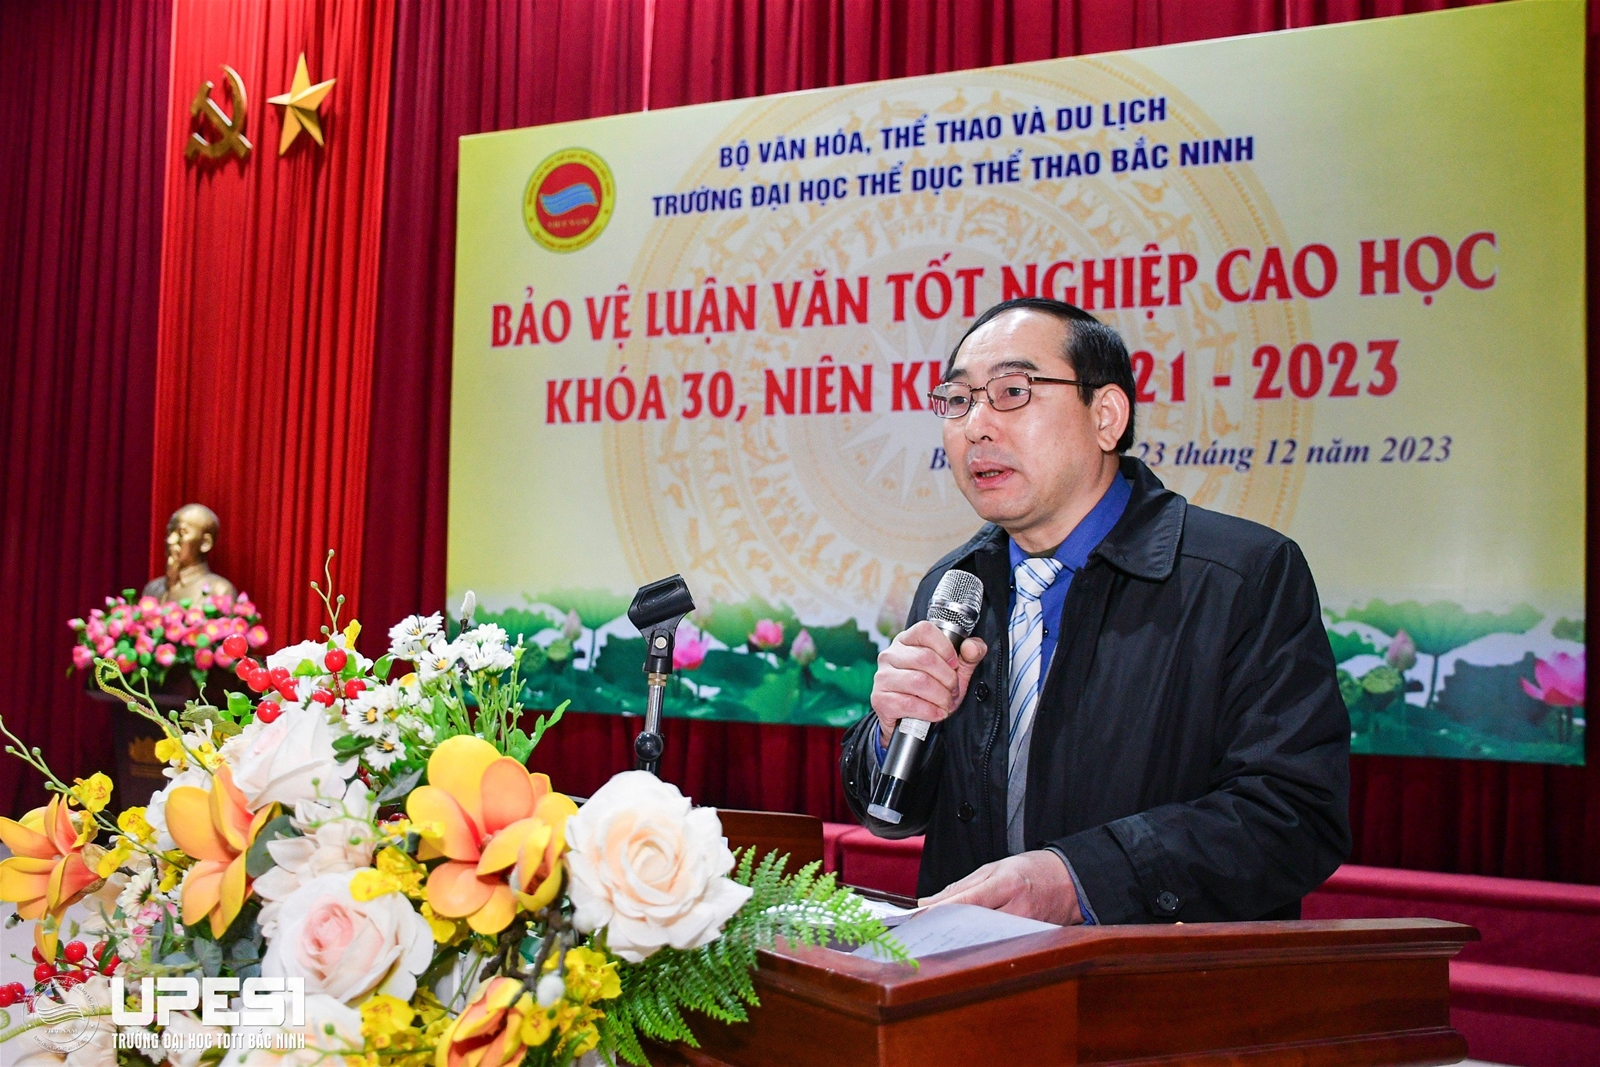 Trường Đại học Thể dục thể thao Bắc Ninh tổ chức đánh giá luận văn Cao học Khóa 30, niên khóa 2021-2023